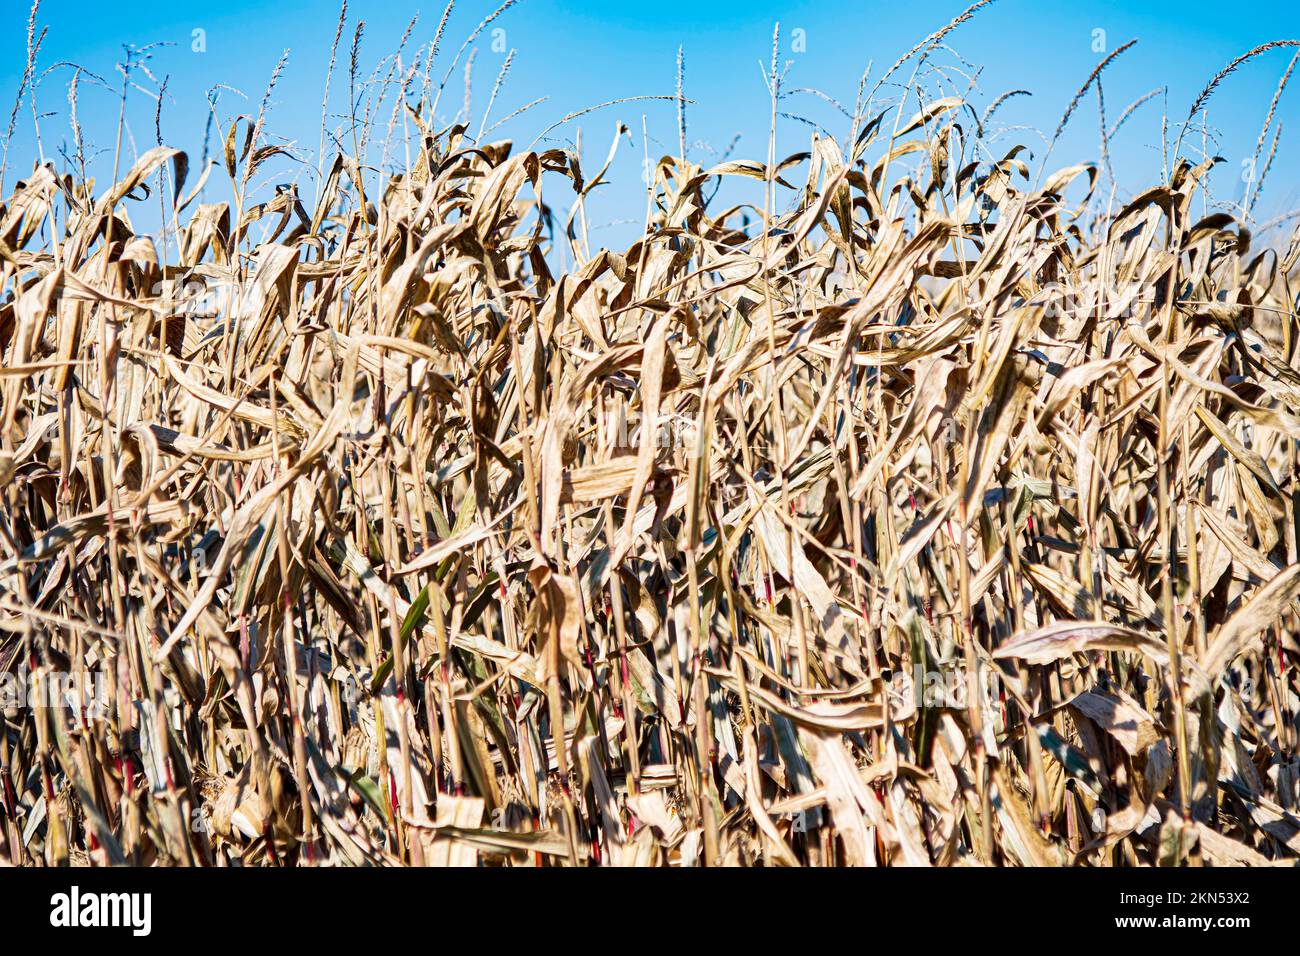 Hintergrund von getrocknetem, stehendem Feldmais, der zur Ernte bereit ist. Stockfoto